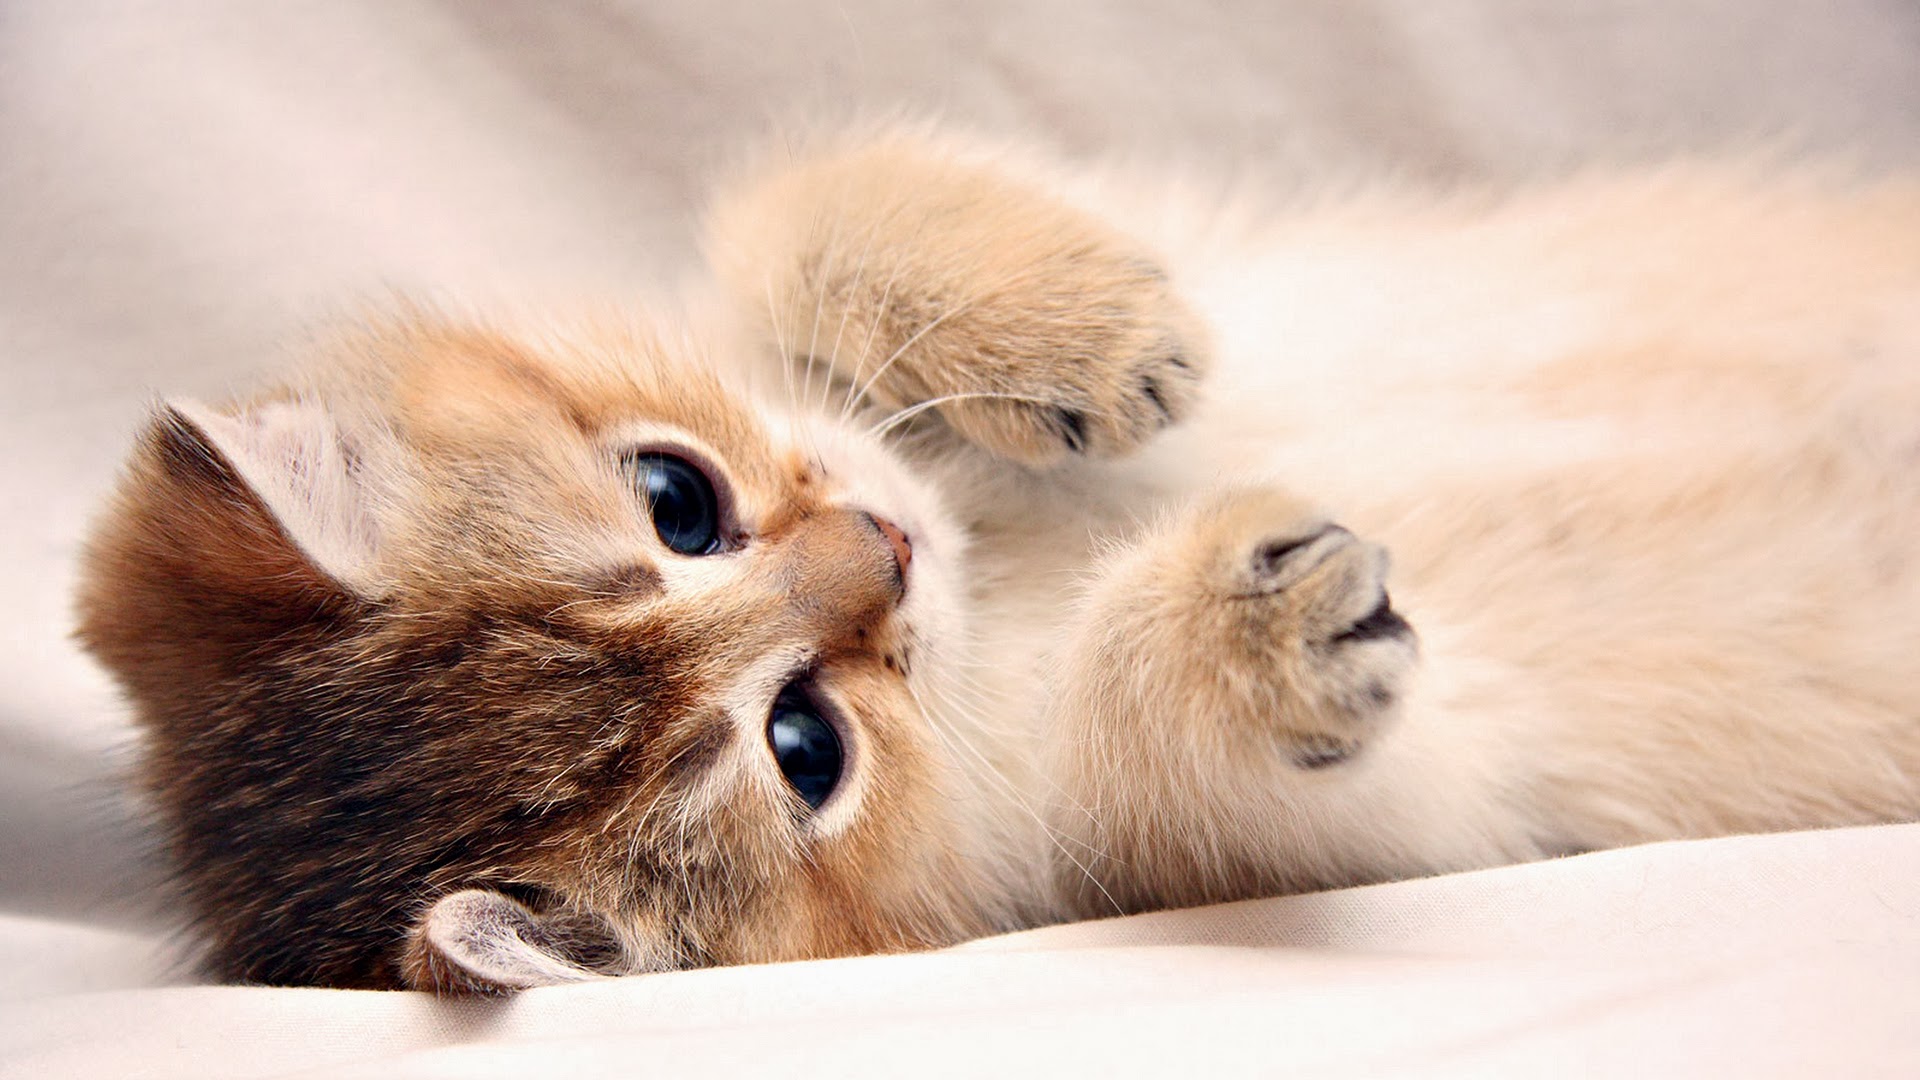 Cute Kitten Cat Photo Image 2k HD Wallpaper 1920x1080